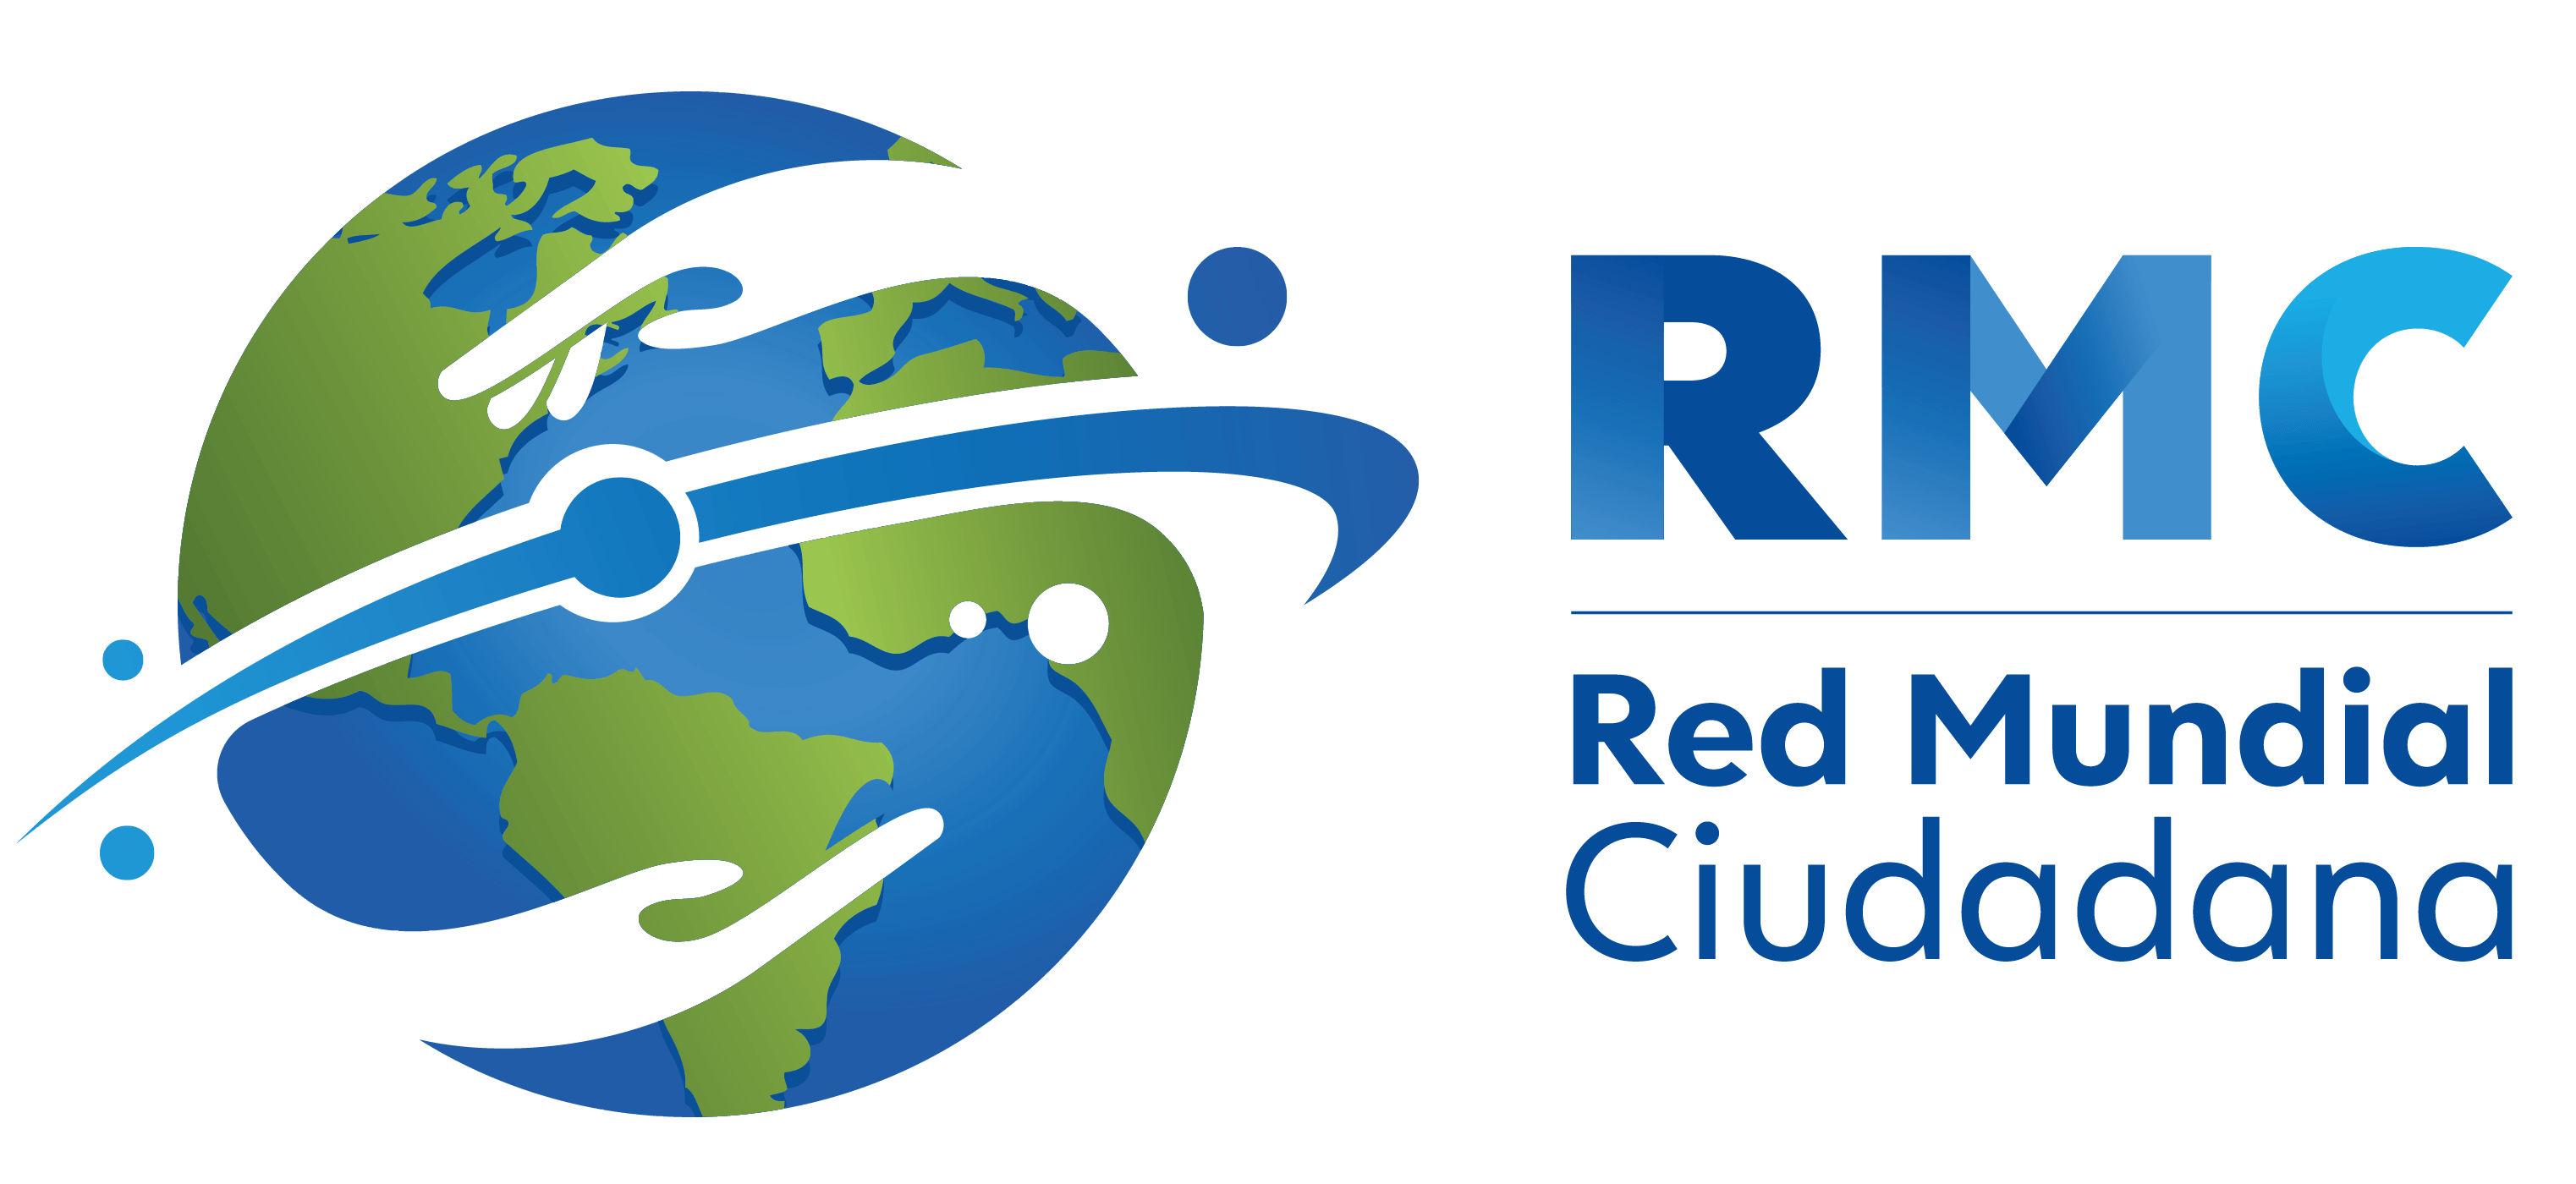 Red Mundial de Ciudadanos